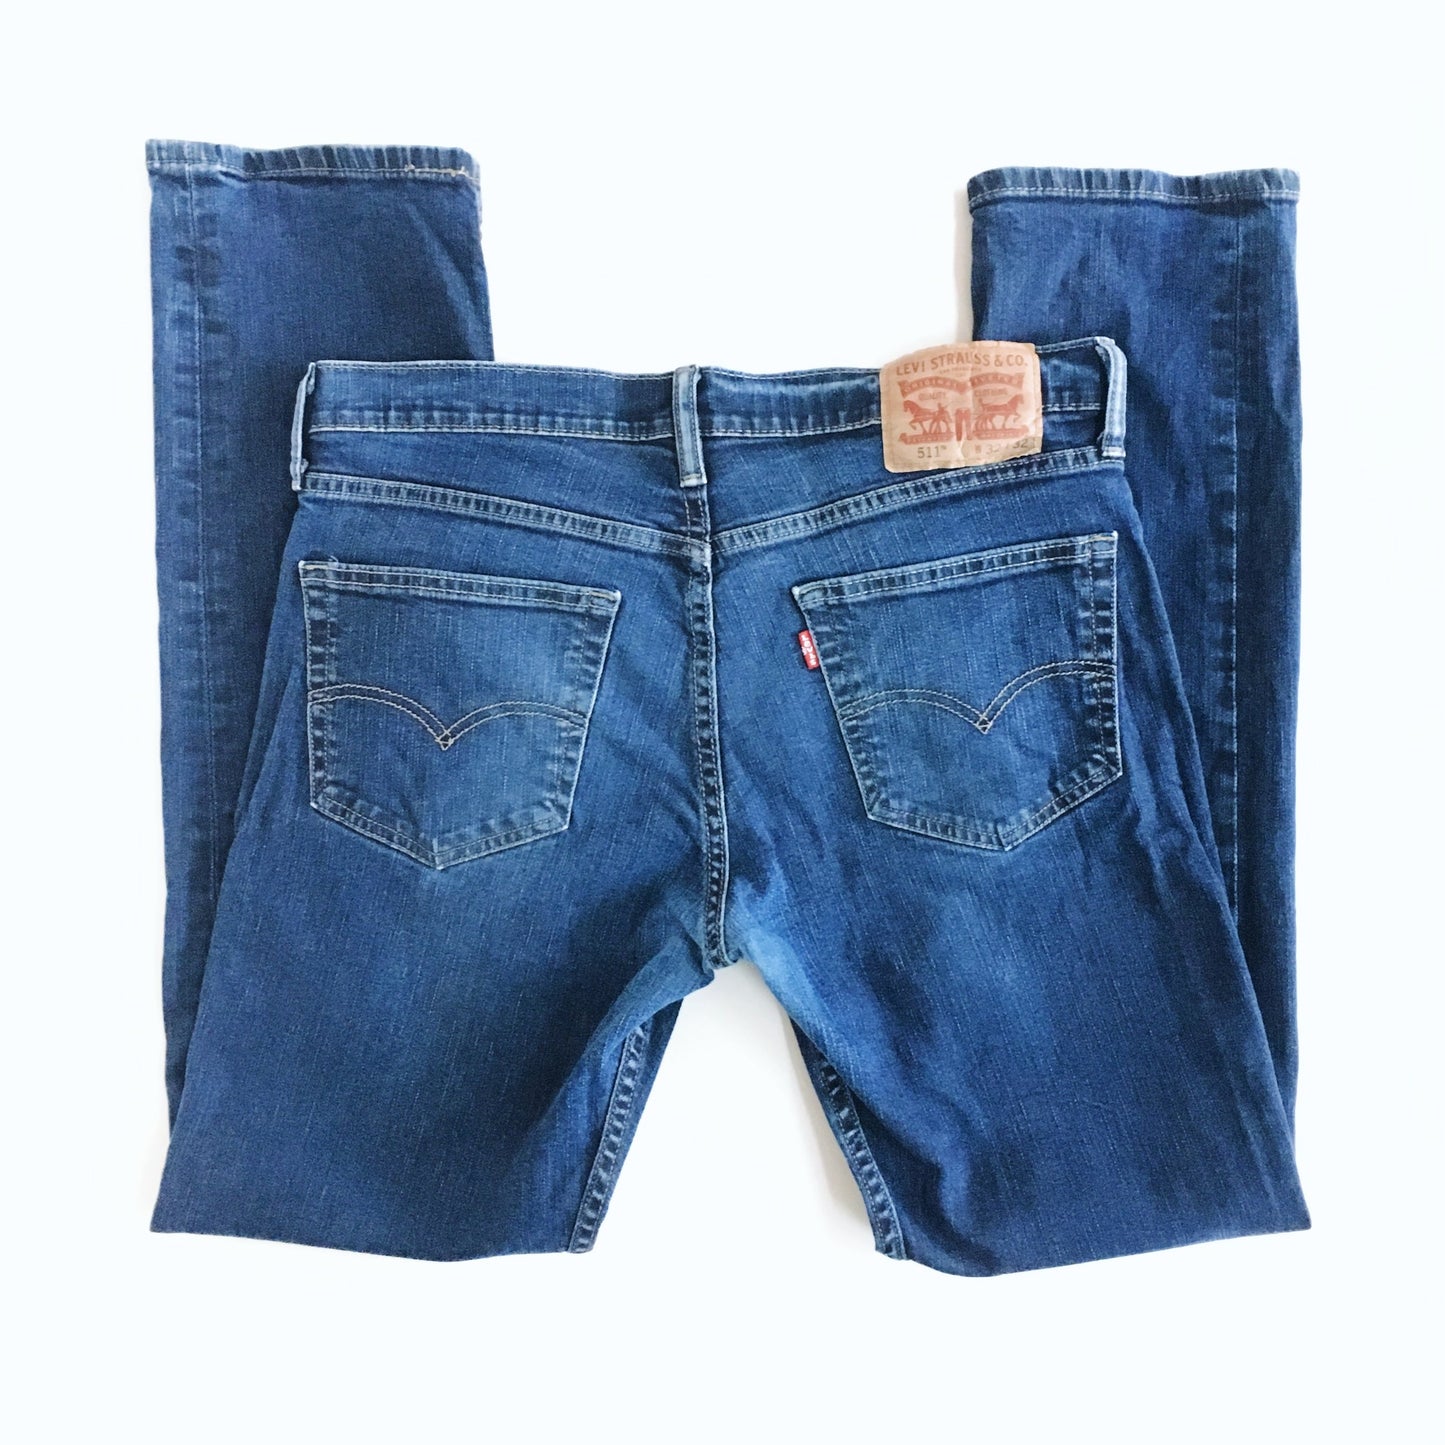 Levi's 511 Jeans - size 32